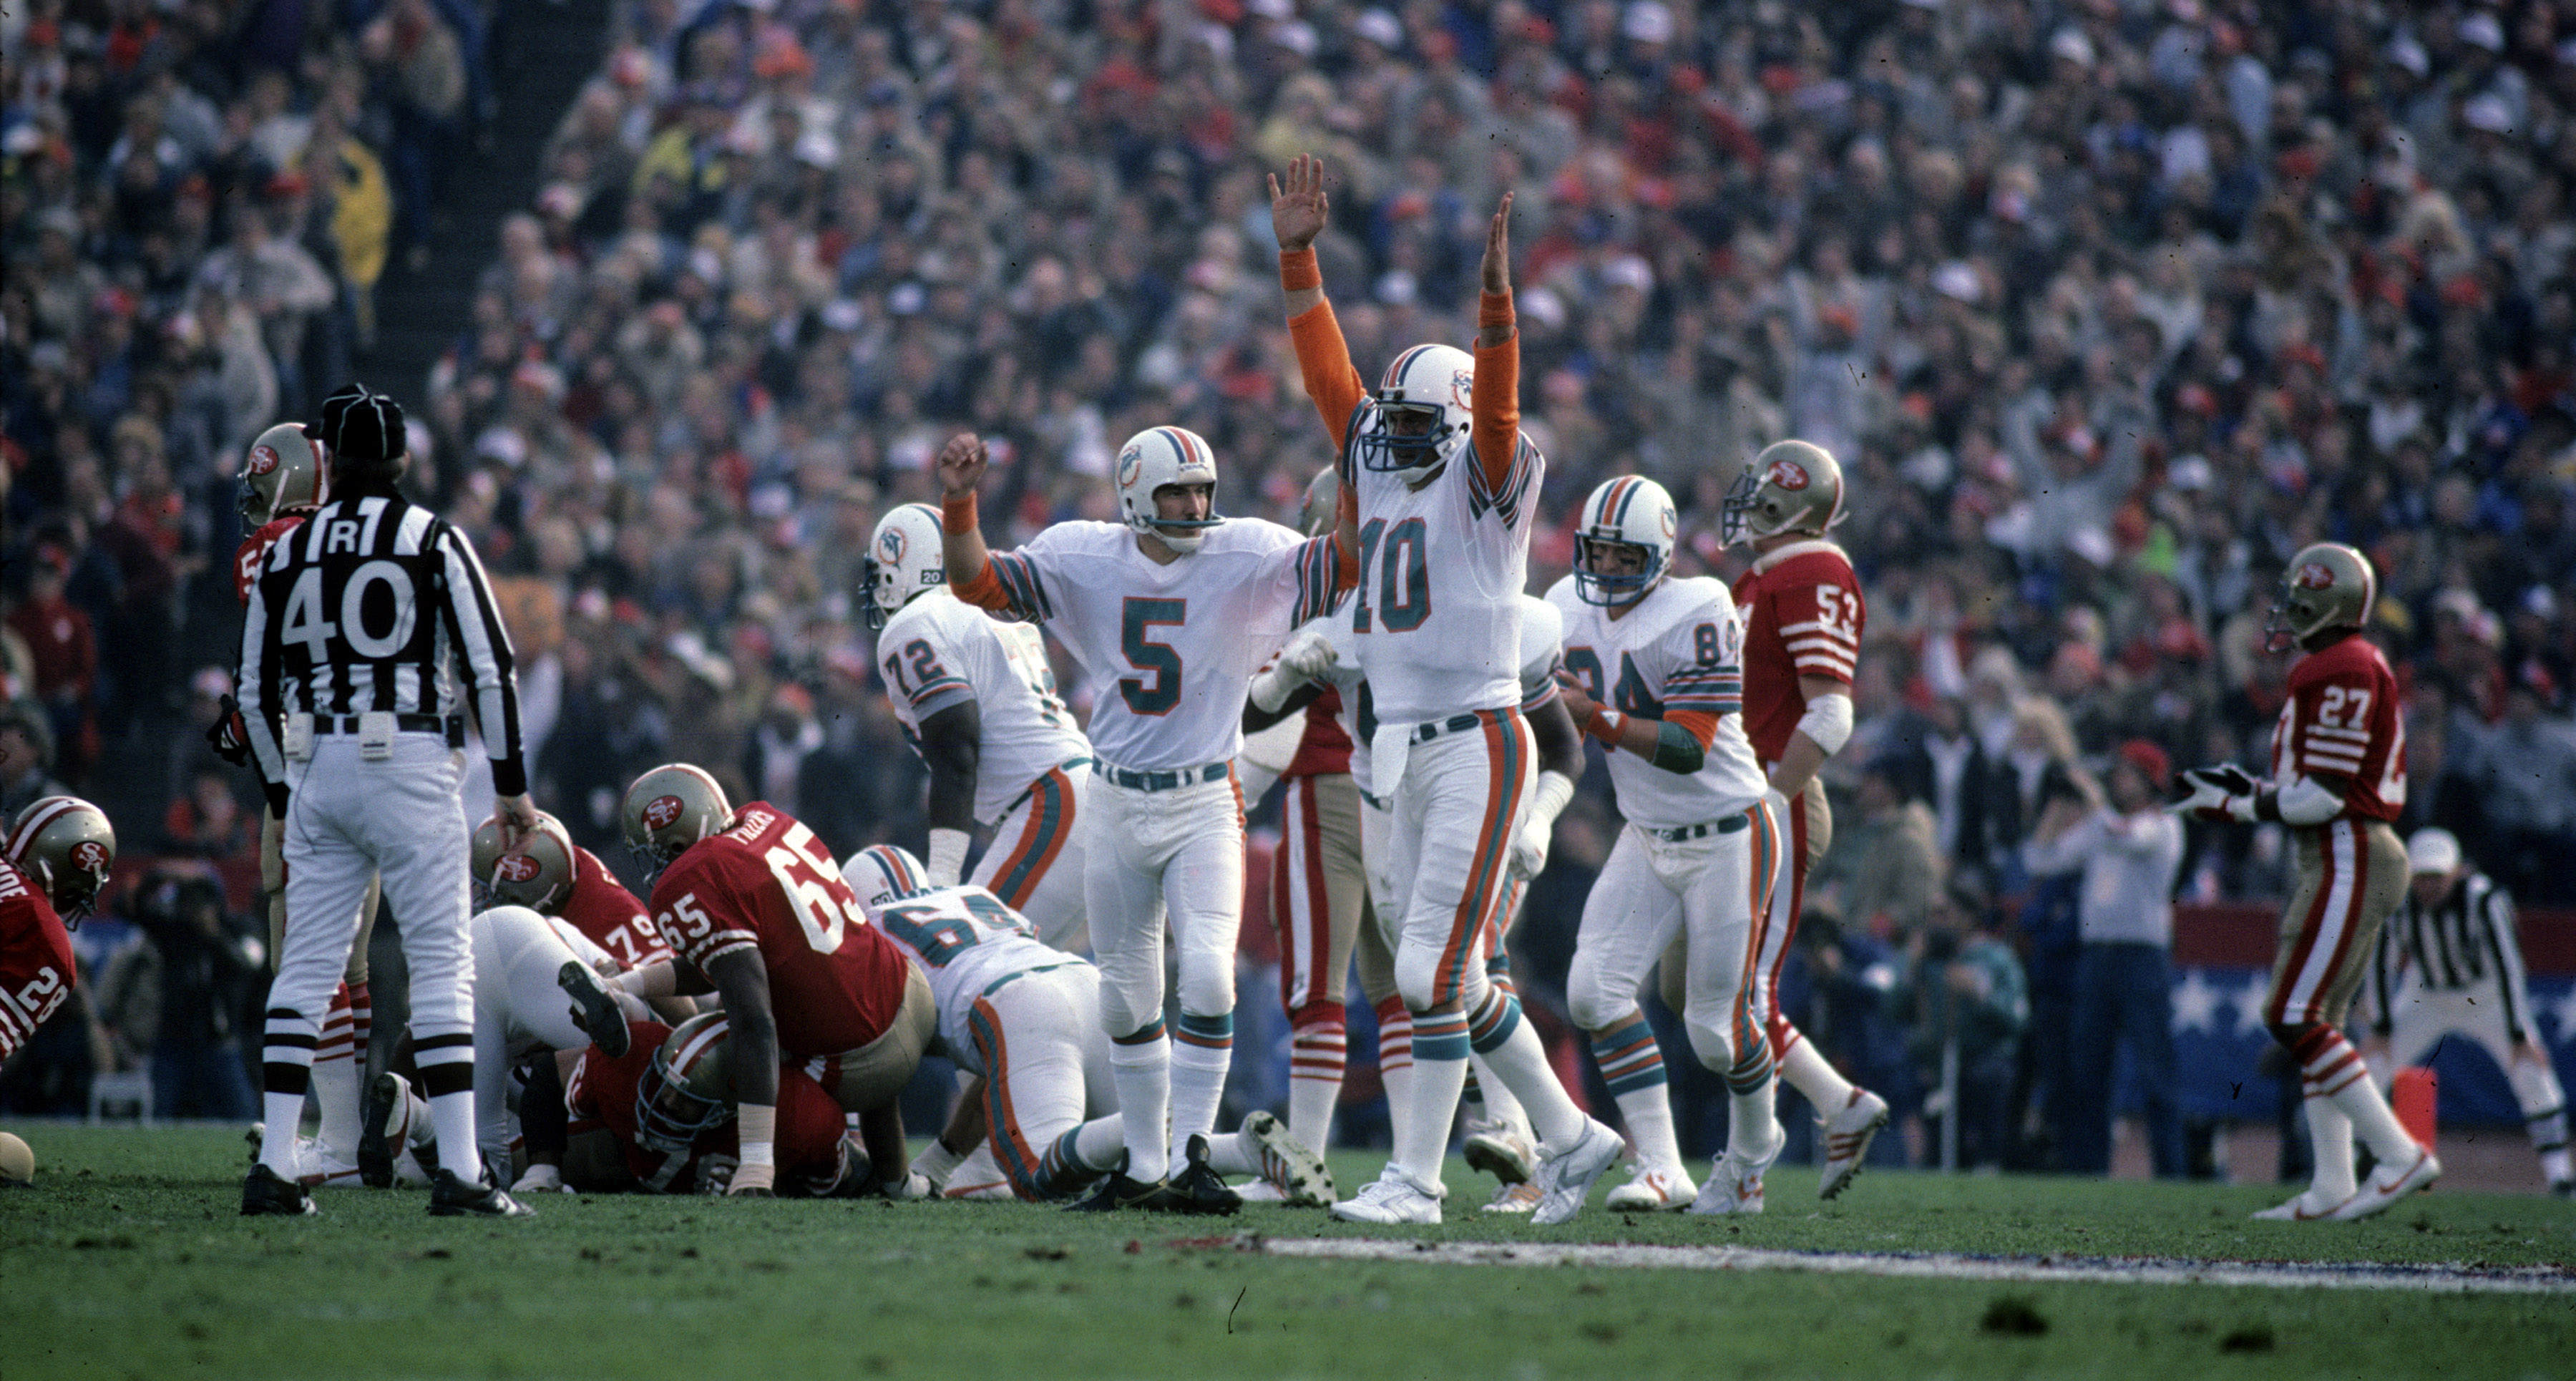 Dolphins kicker Uwe Von Schamann and holder Don Strock celebrate a field goal during Super Bowl XIX